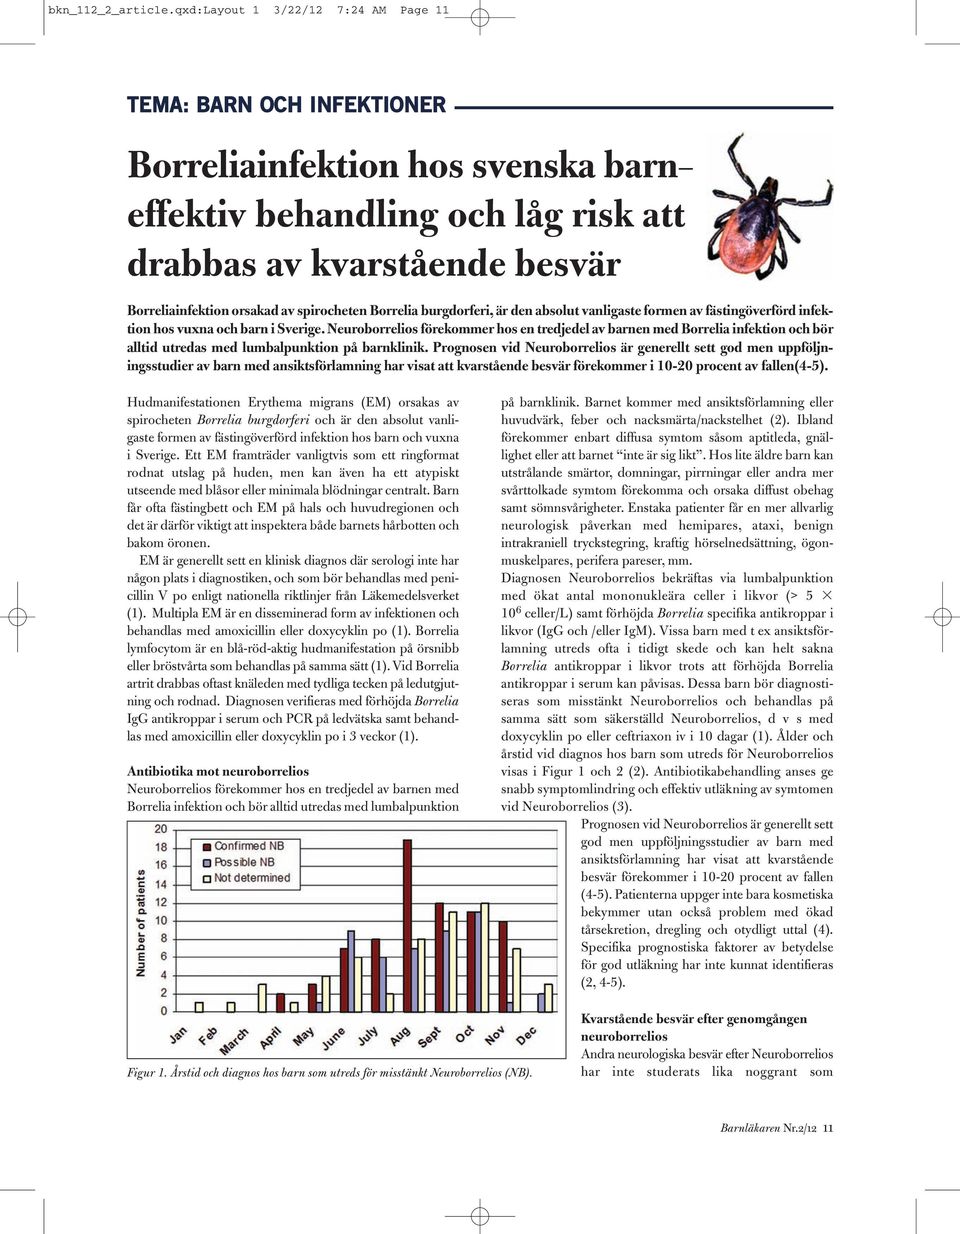 spirocheten Borrelia burgdorferi, är den absolut vanligaste formen av fästingöverförd infektion hos vuxna och barn i Sverige.